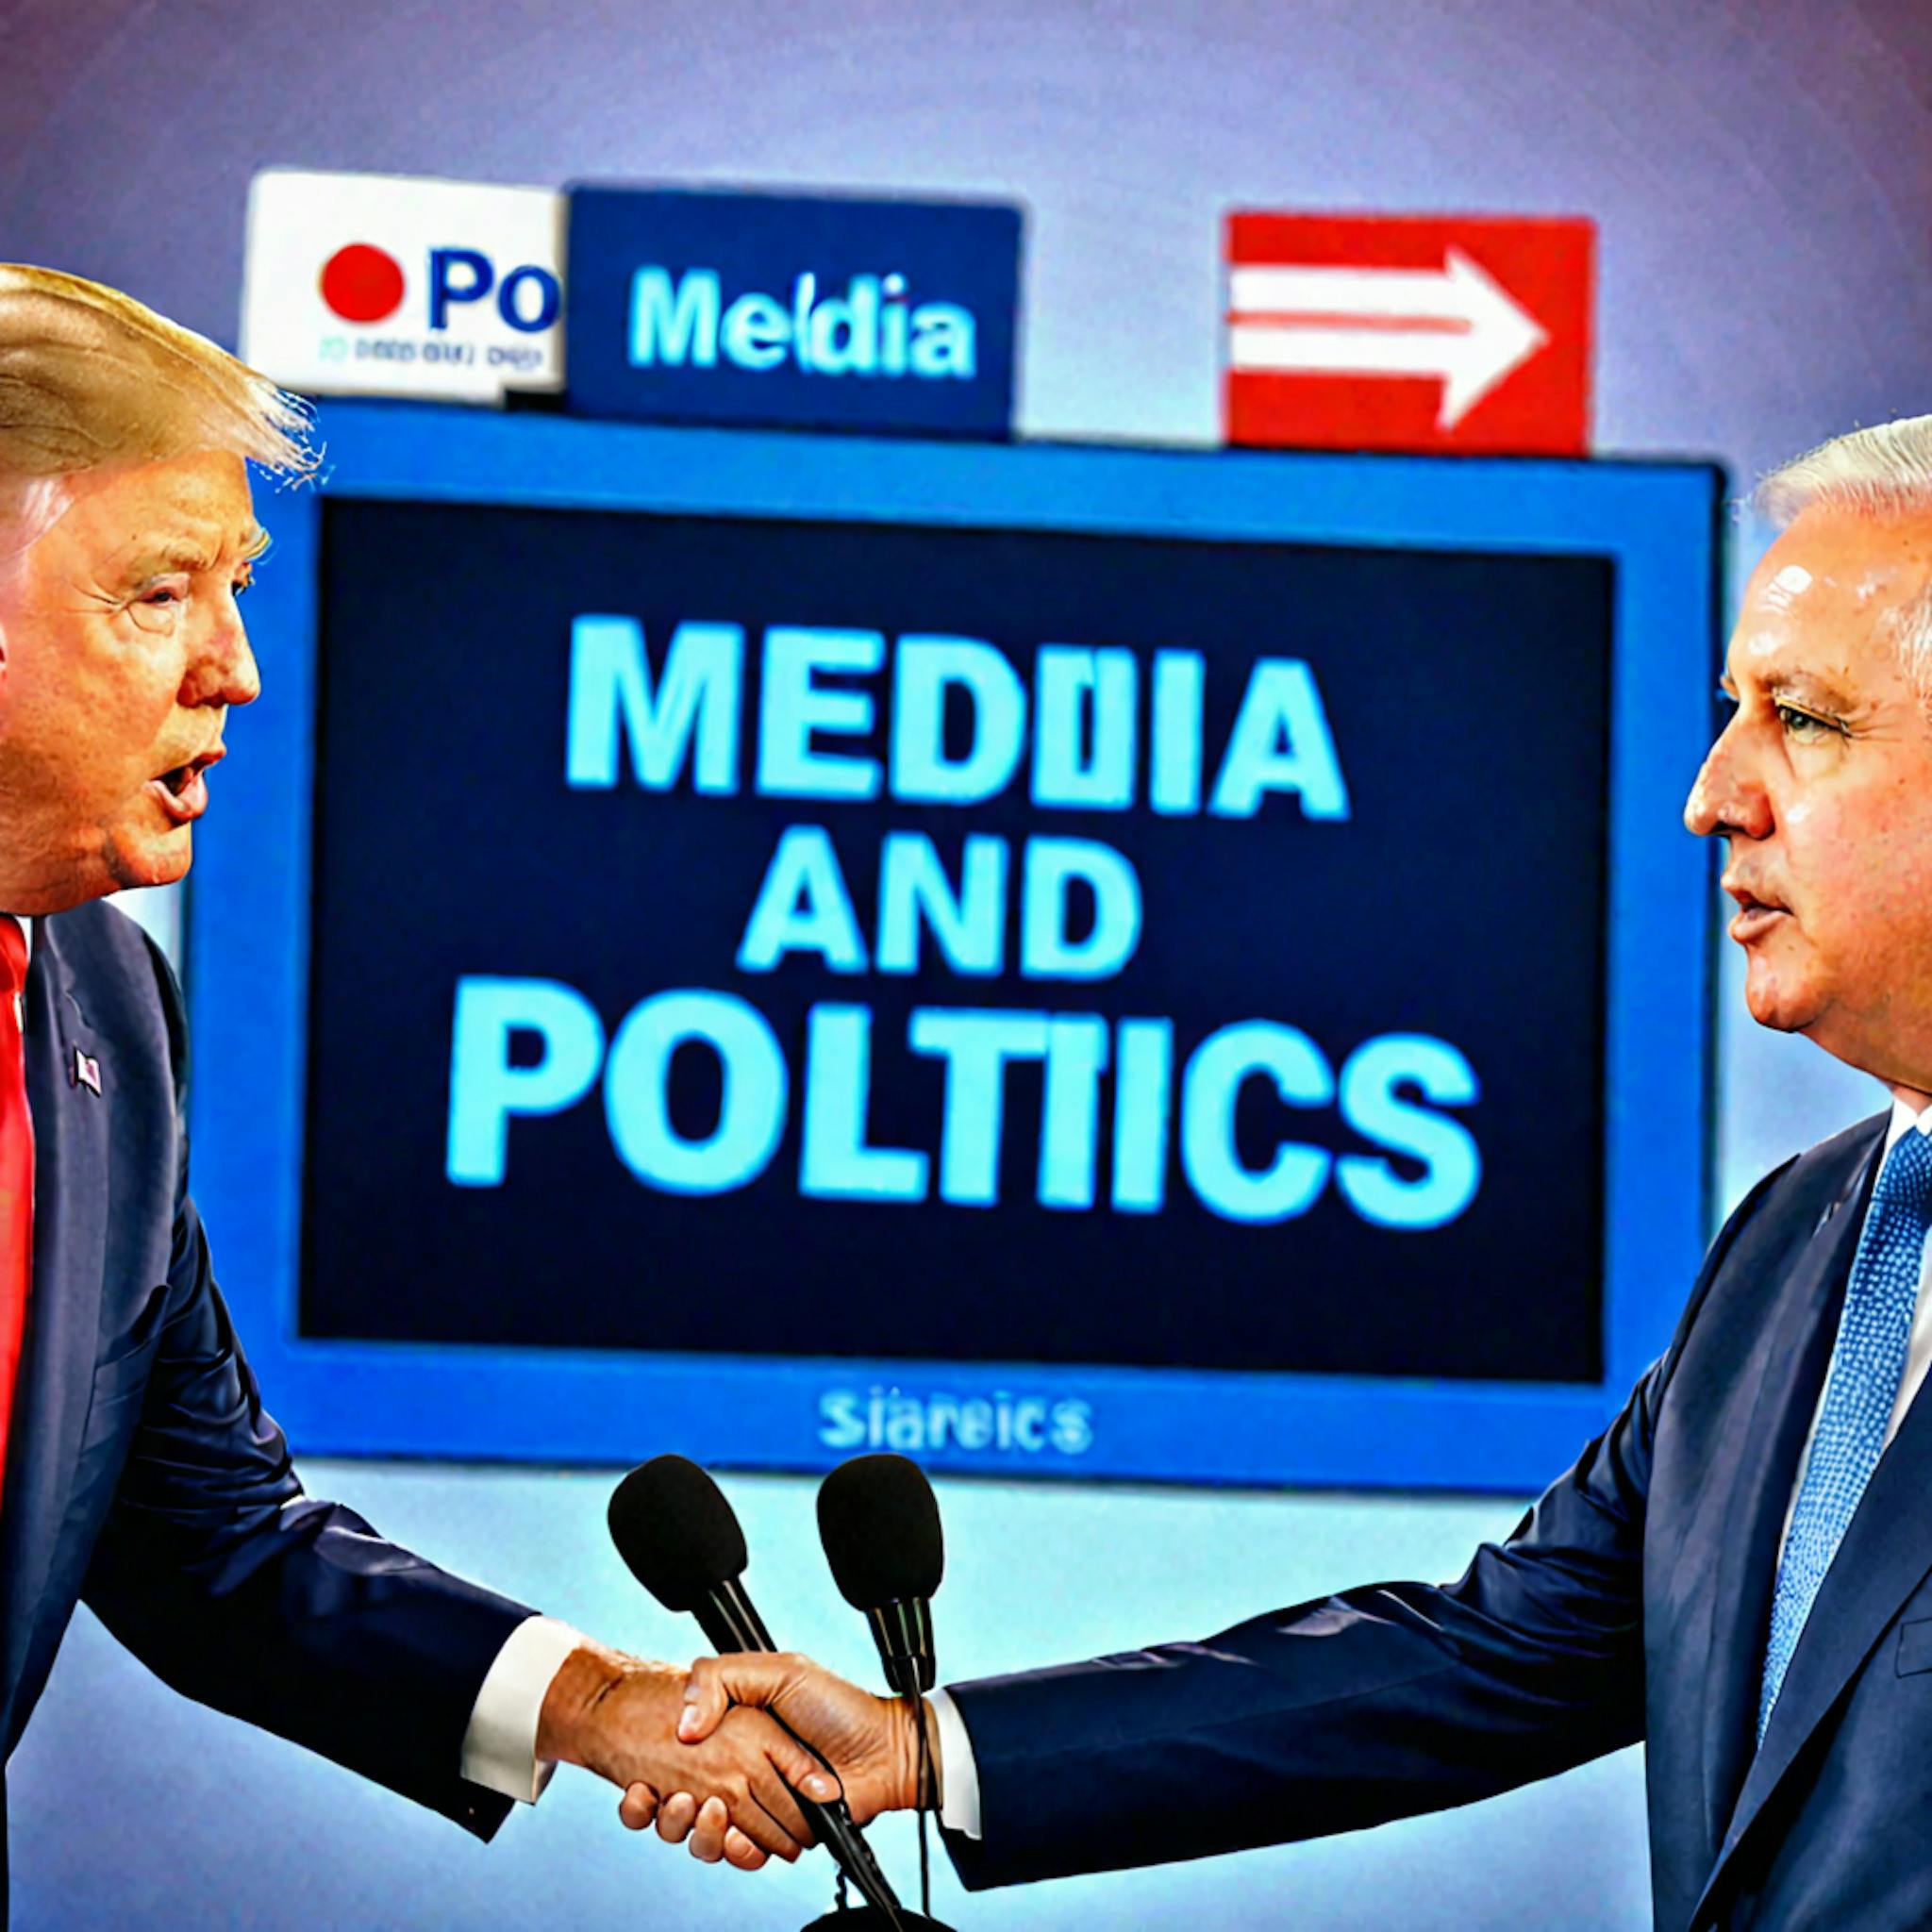 featured image - Clasificación multilingüe de posturas políticas generales de los medios: resumen y conclusiones